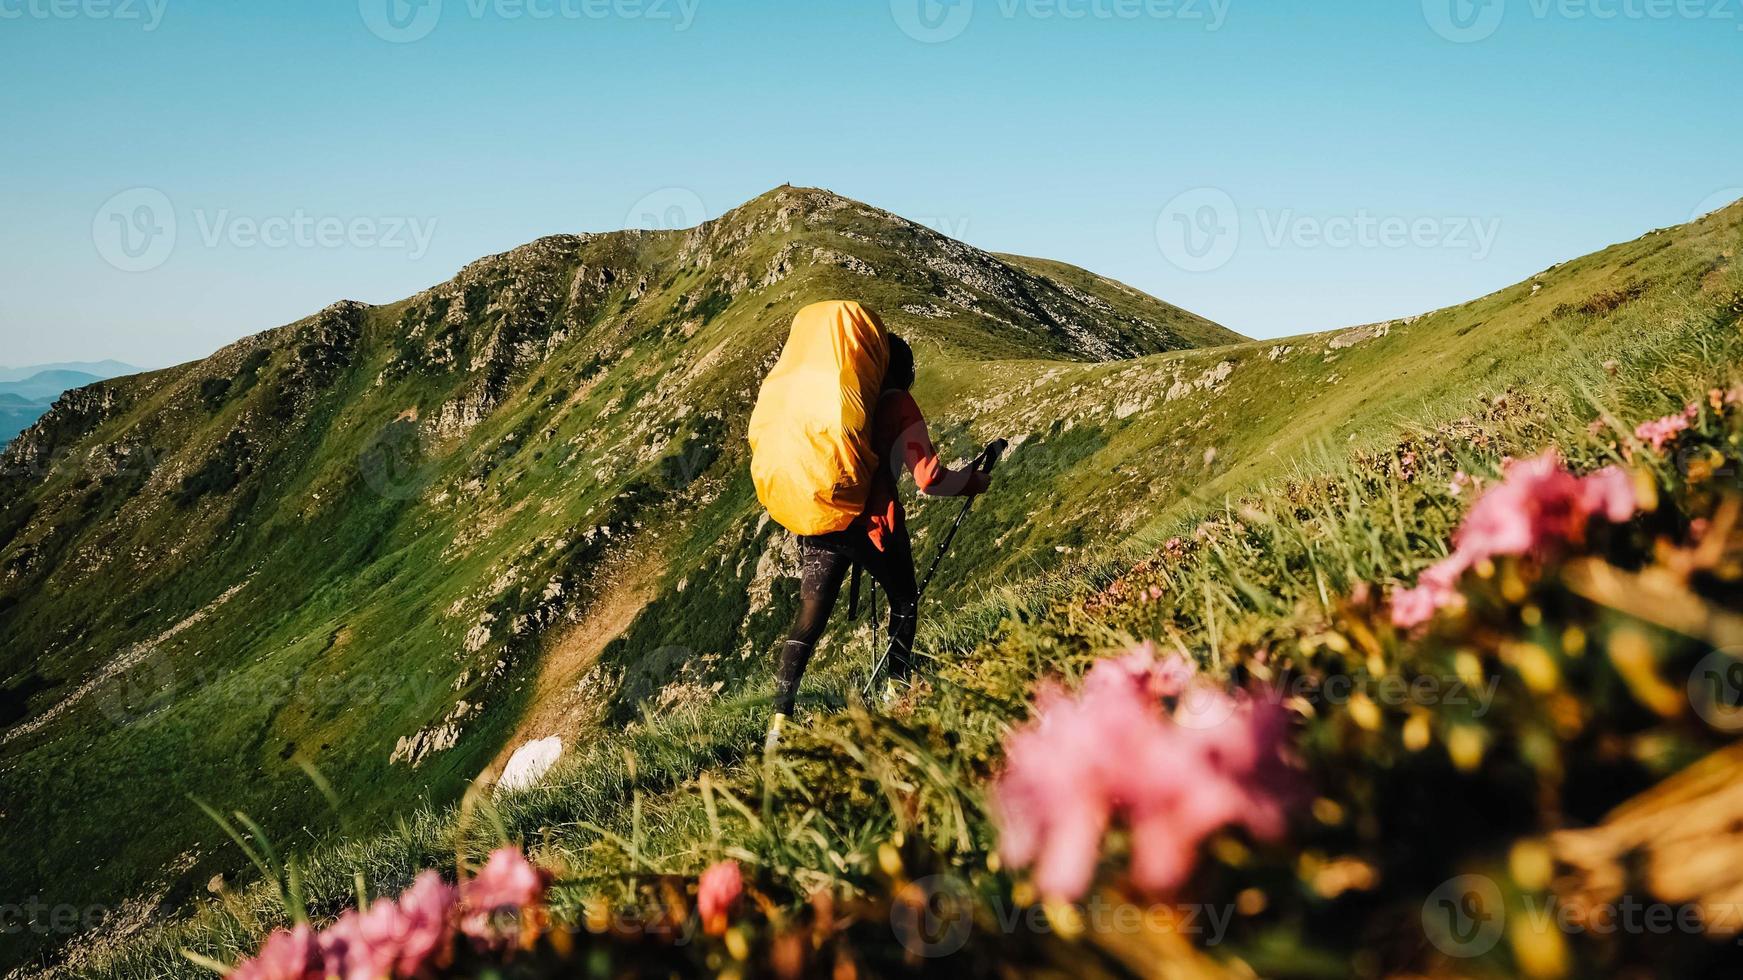 Touristin geht auf einem Wanderweg mit einem Rucksack vor dem Hintergrund grüner Berge und des Himmels foto